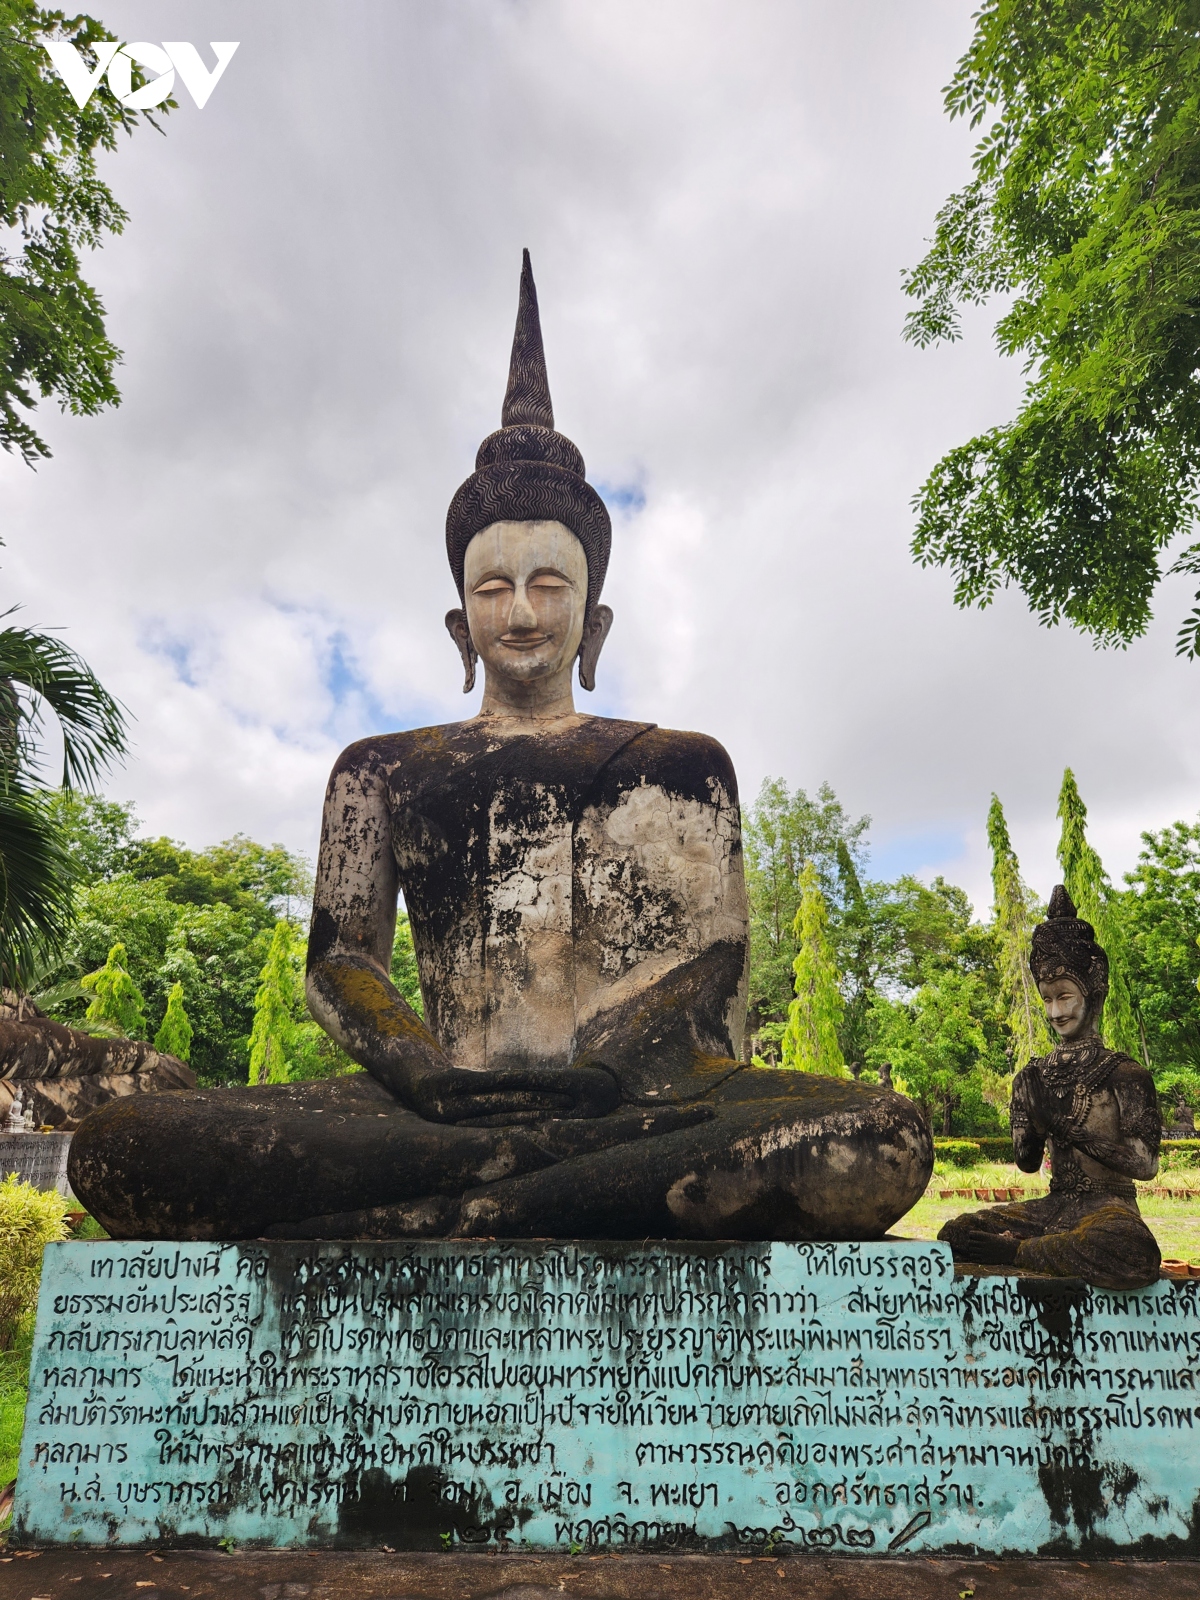 Nhóm tượng Phật trong Sưu tập Điêu khắc đá Khmer  Dự án Truyền thông Giúp  Chùa có tượng Phật  Cúng dường Tượng Phật